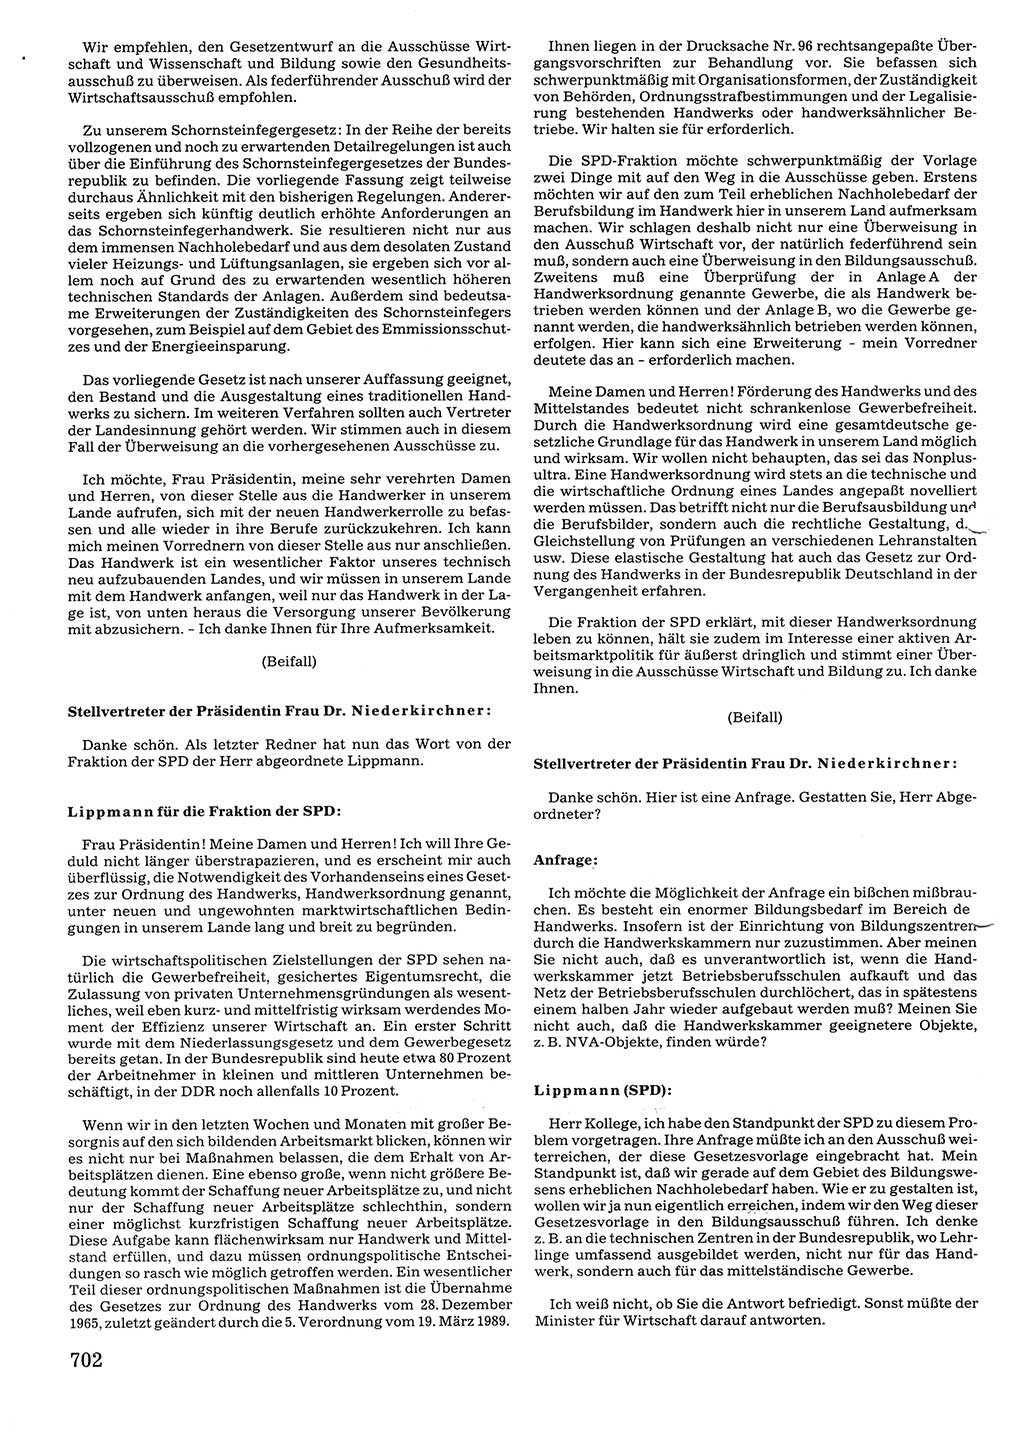 Tagungen der Volkskammer (VK) der Deutschen Demokratischen Republik (DDR), 10. Wahlperiode 1990, Seite 702 (VK. DDR 10. WP. 1990, Prot. Tg. 1-38, 5.4.-2.10.1990, S. 702)